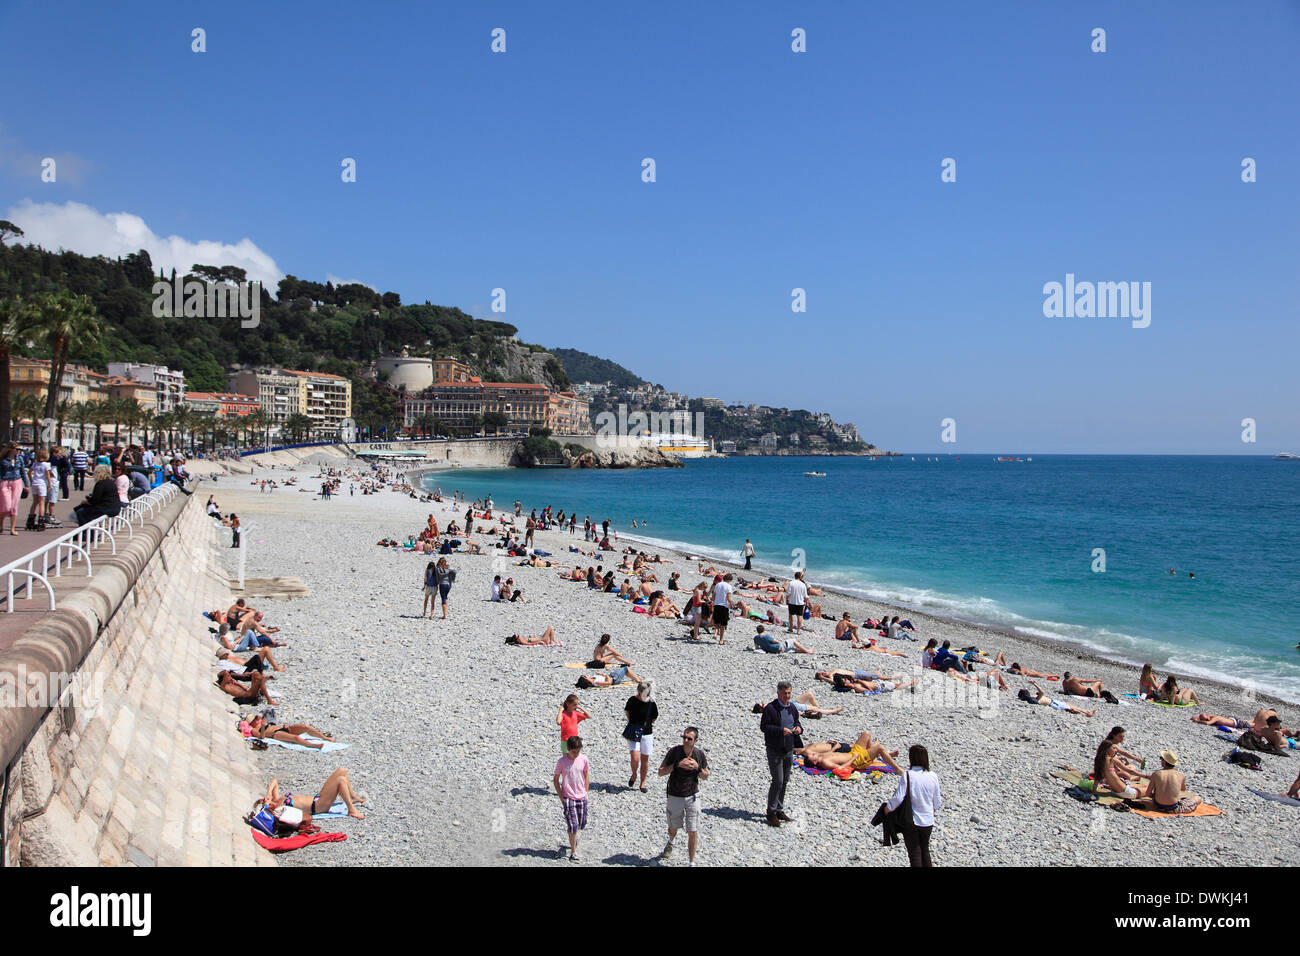 Spiaggia, Nizza Cote d'Azur, Alpes Maritimes, in Provenza Costa Azzurra, Francia, Mediterraneo, Europa Foto Stock